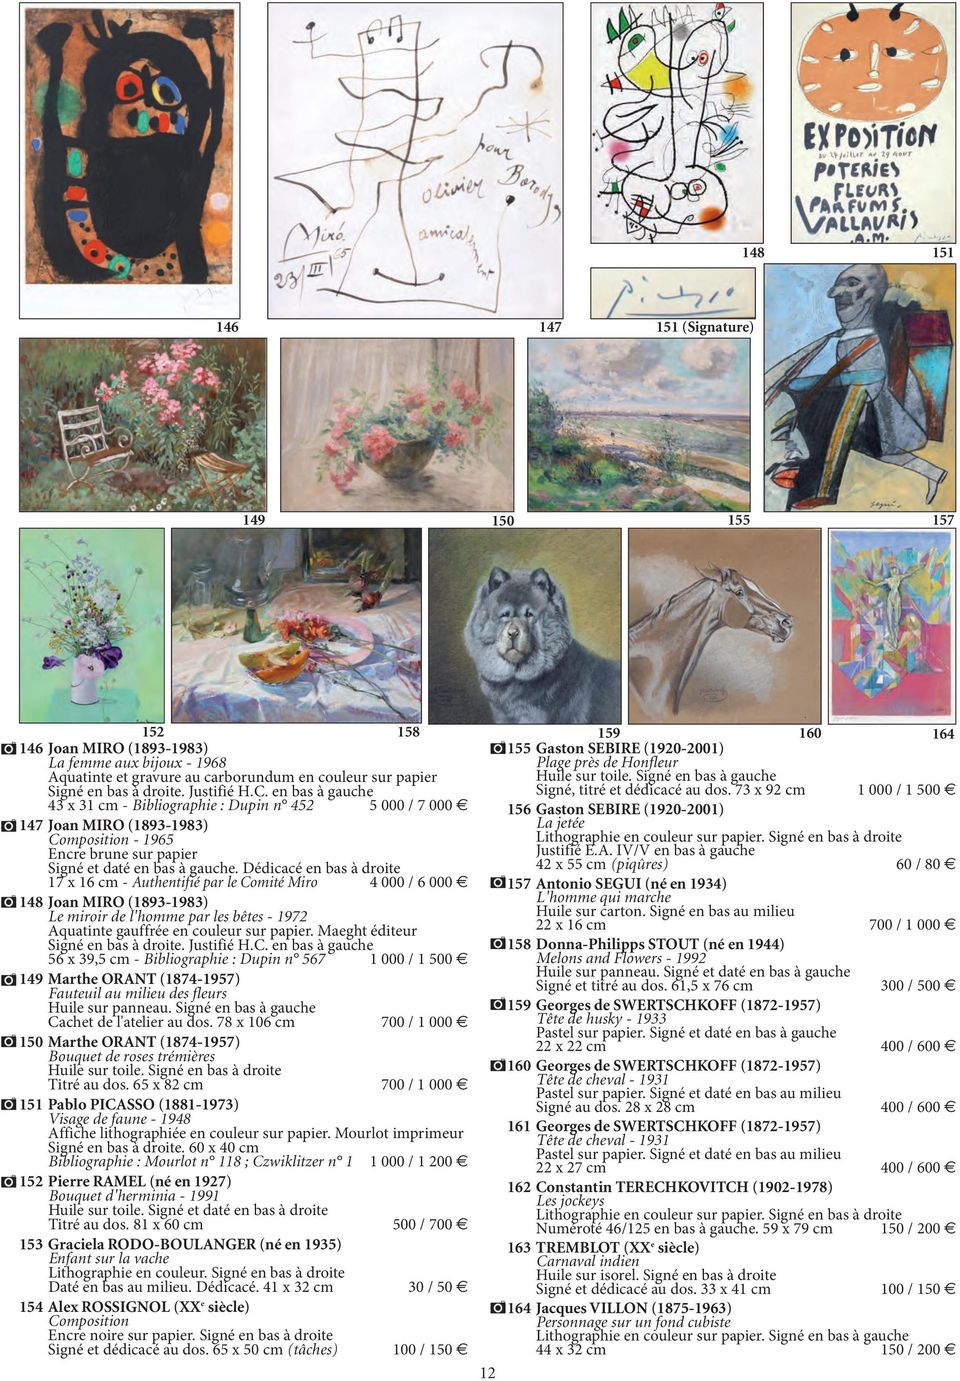 Dédicacé en bas à droite 17 x 16 cm - Authentifié par le Comité Miro 4 000 / 6 000 148 Joan MIRO (1893-1983) Le miroir de l'homme par les bêtes - 1972 Aquatinte gauffrée en couleur sur papier.